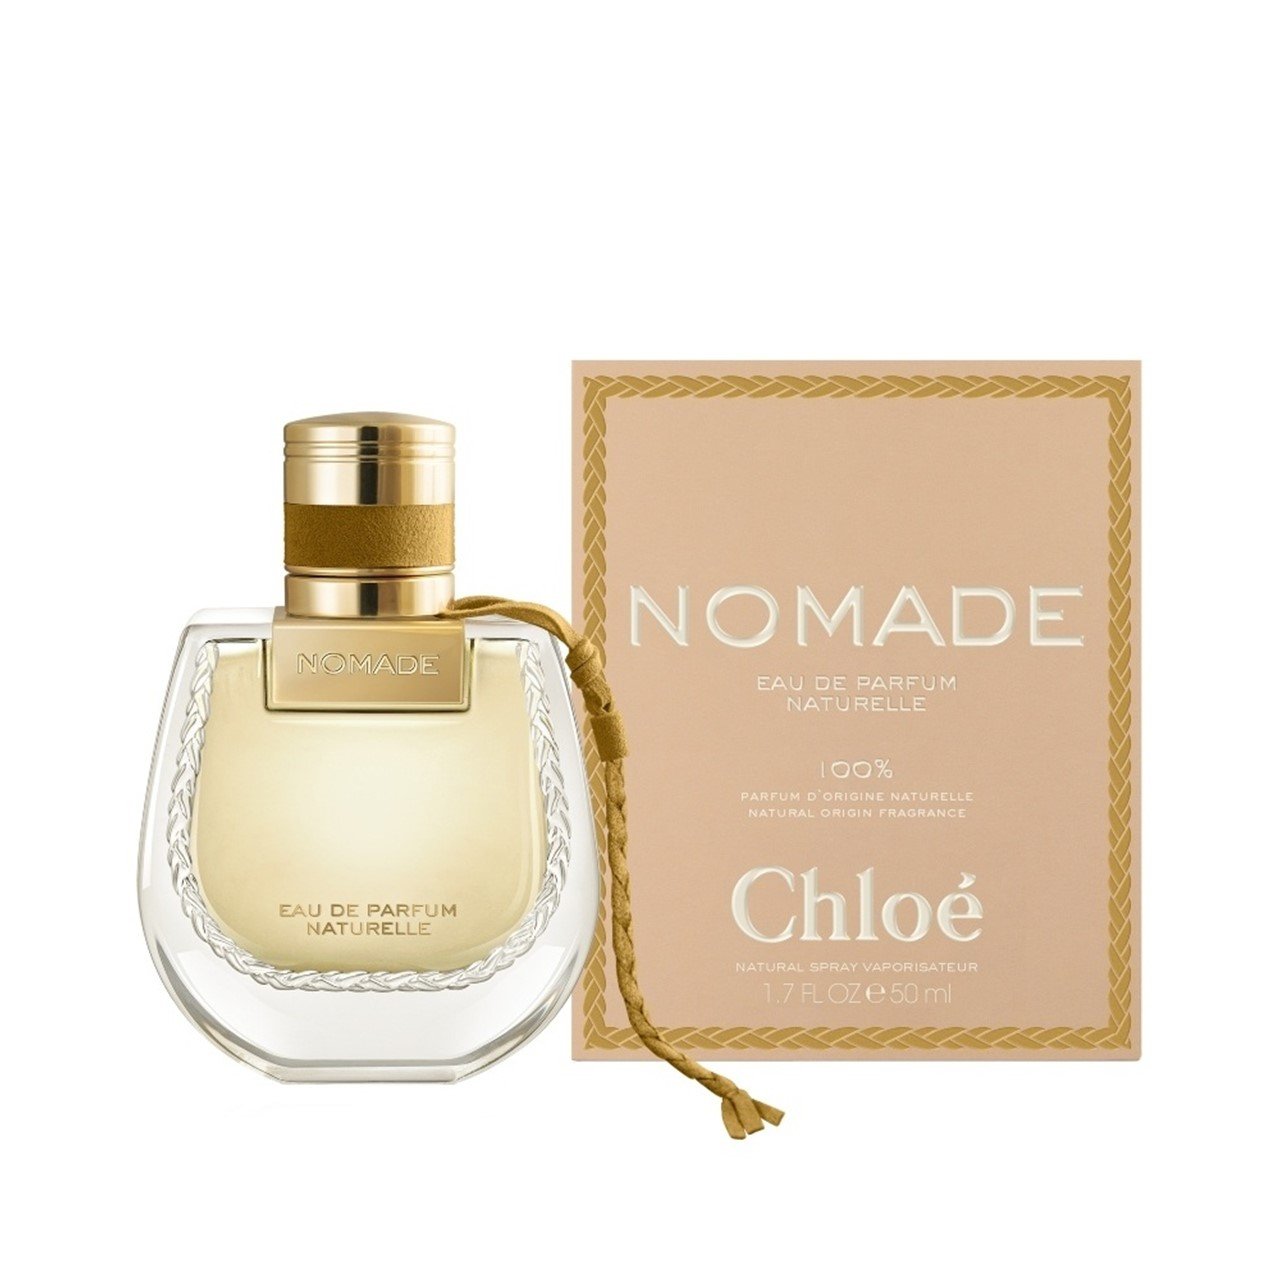 Buy Chloé Nomade Eau de Parfum Naturelle 50ml · USA | Eau de Toilette